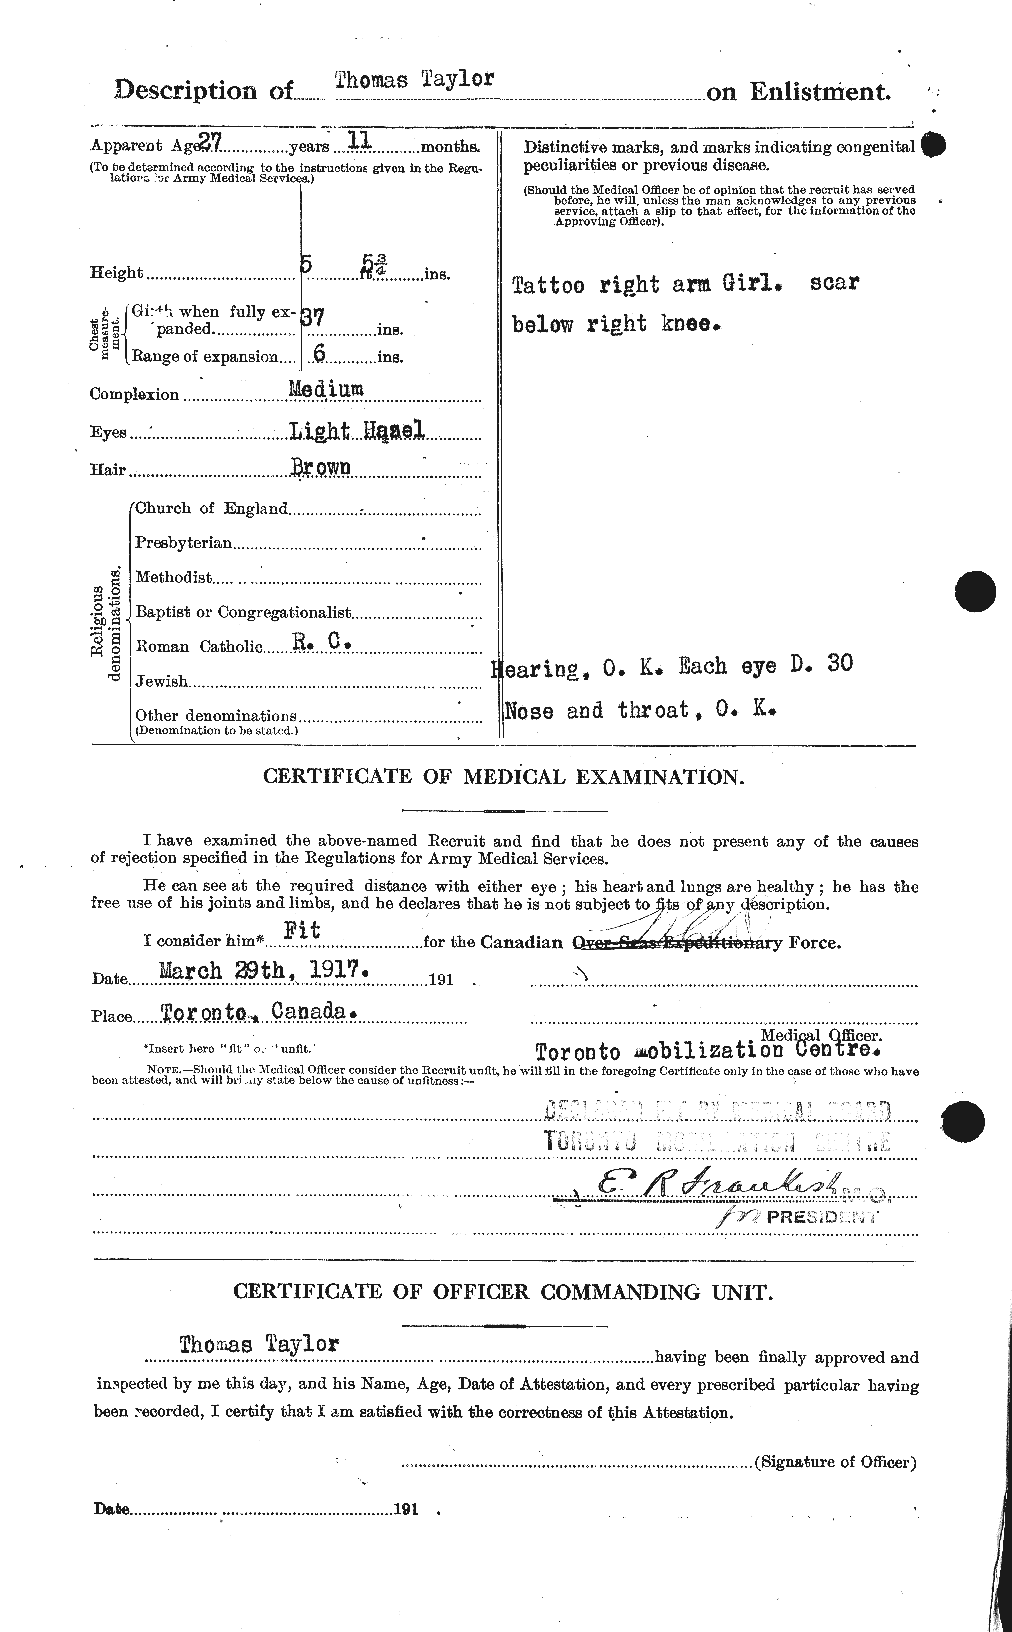 Dossiers du Personnel de la Première Guerre mondiale - CEC 627963b